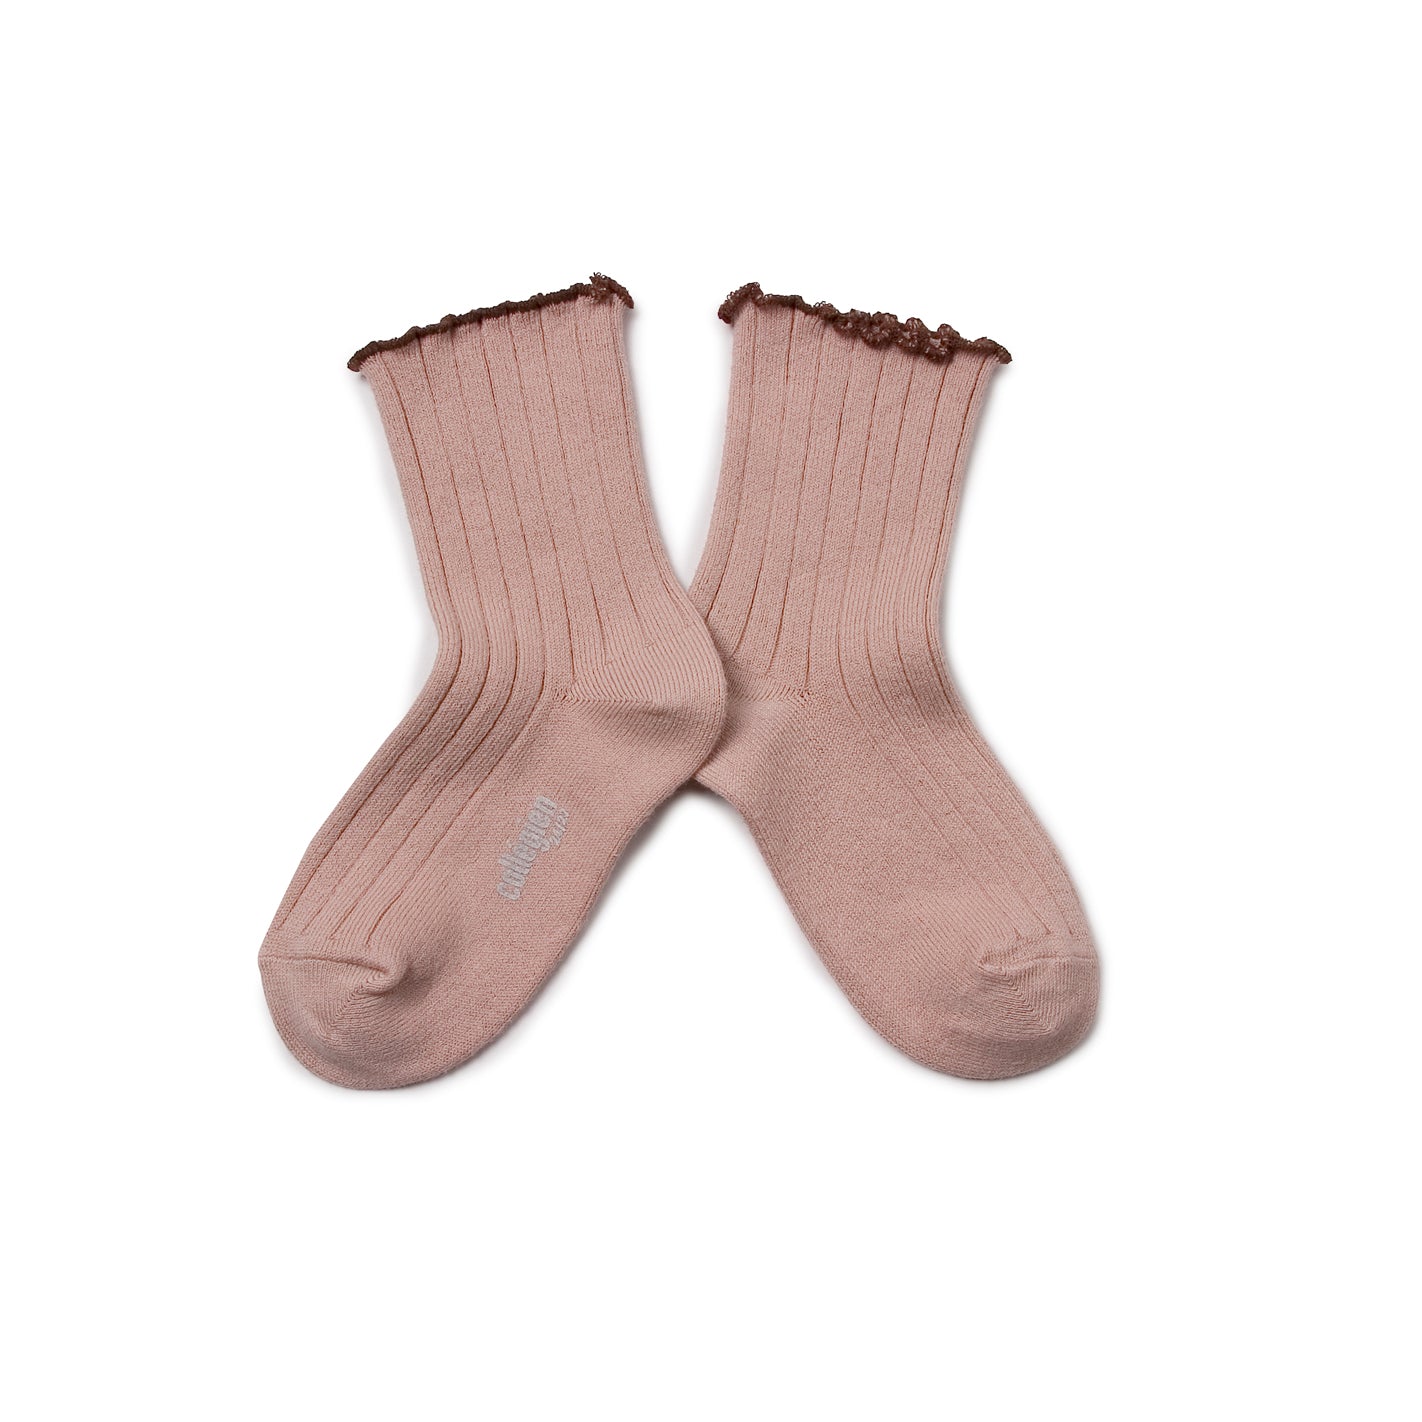 Accessories Socks & Tights